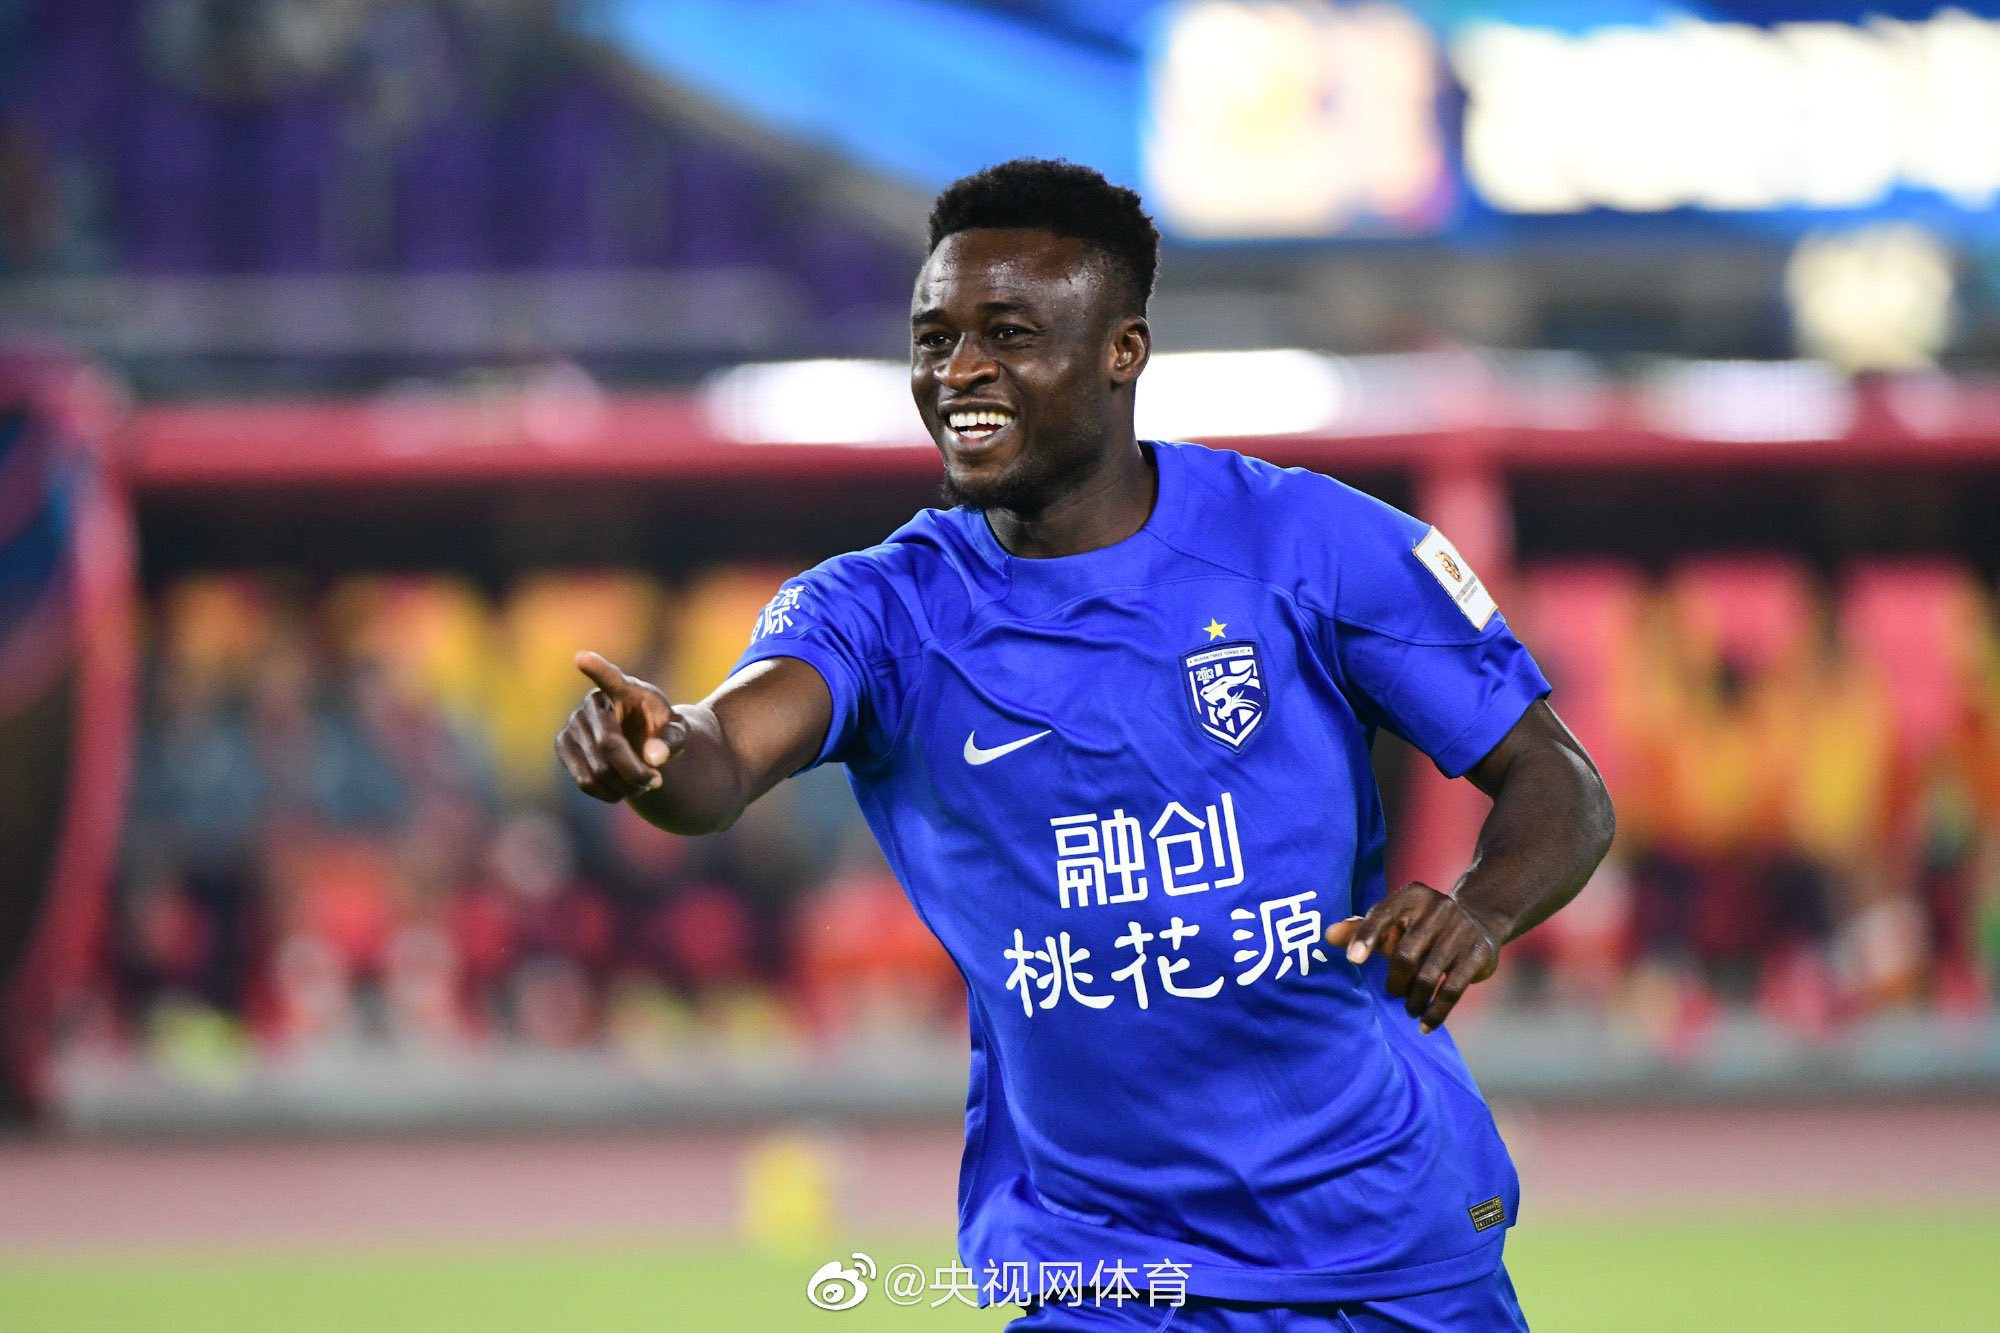 Abdul Aziz Yakubu named in Chinese Super League team of the week